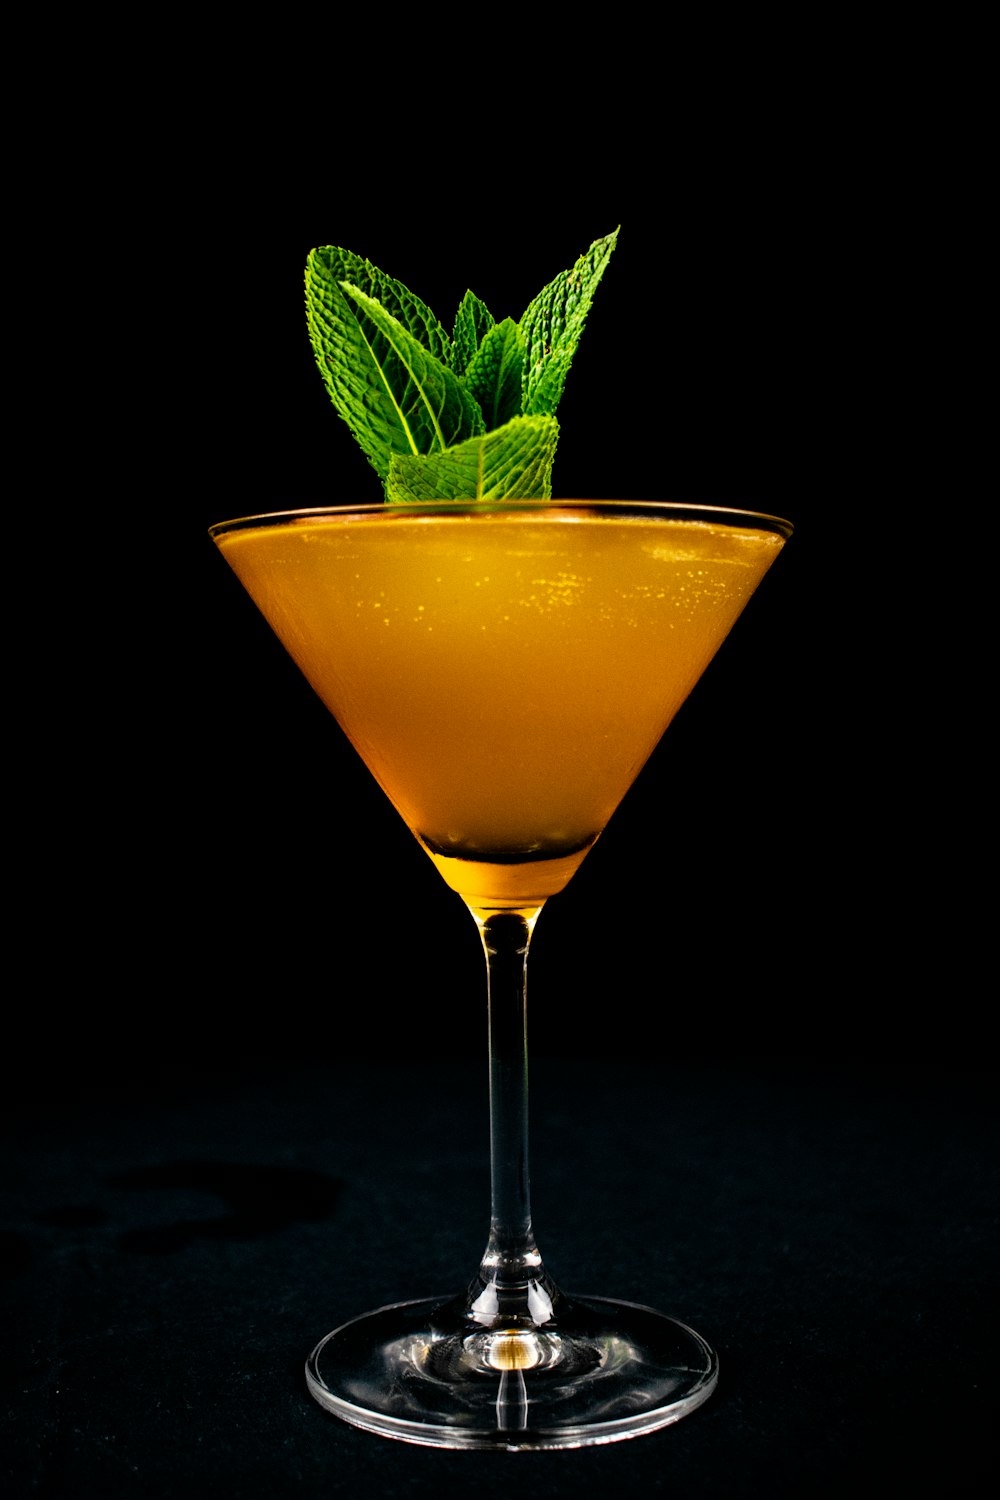 Liquide orange dans un verre à cocktail transparent